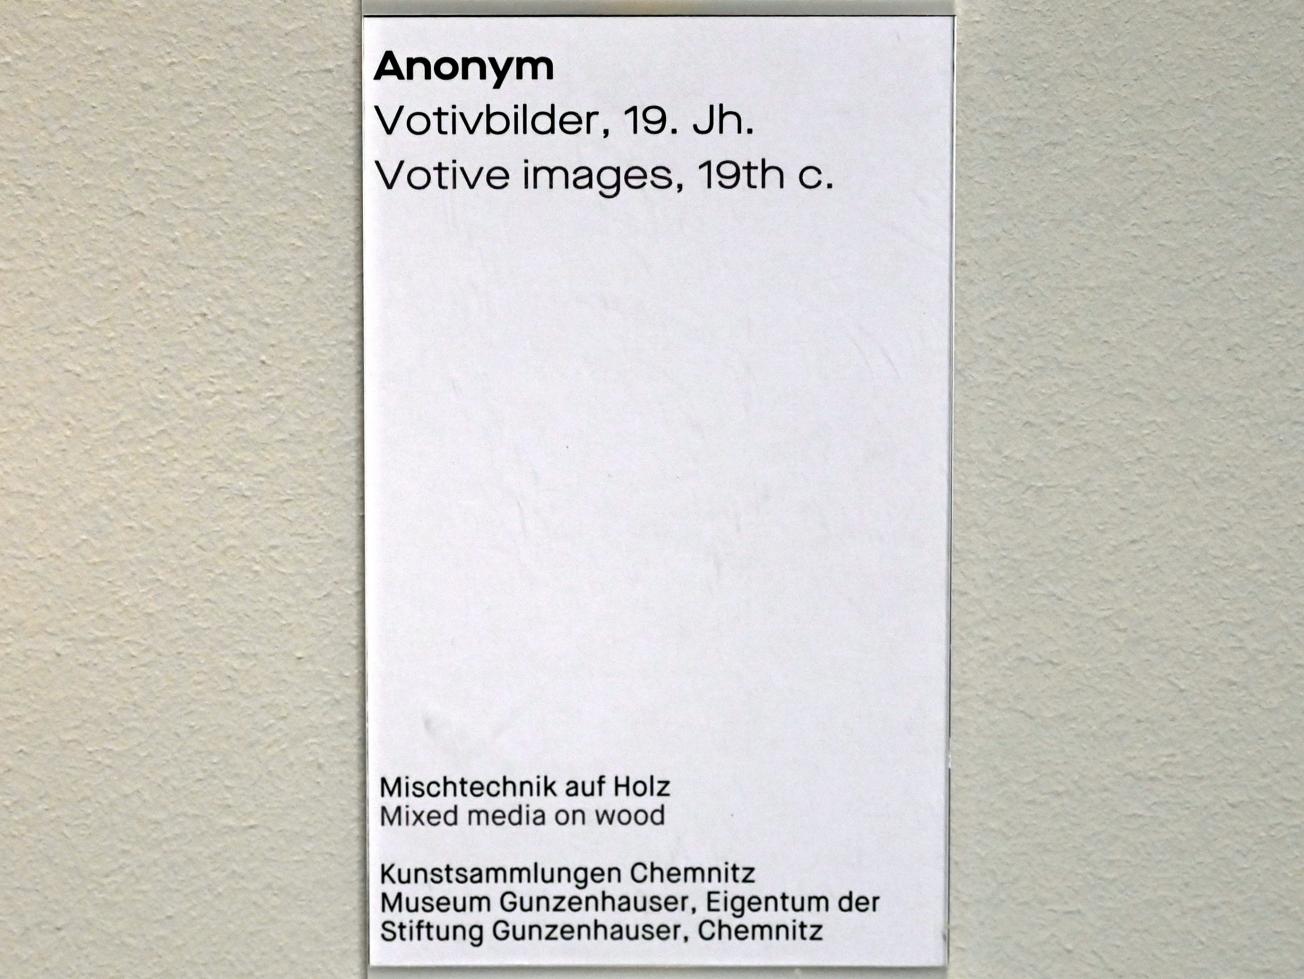 Votivbild, Chemnitz, Museum Gunzenhauser, Saal 3.5 - Murnau, 19. Jhd., Bild 2/2